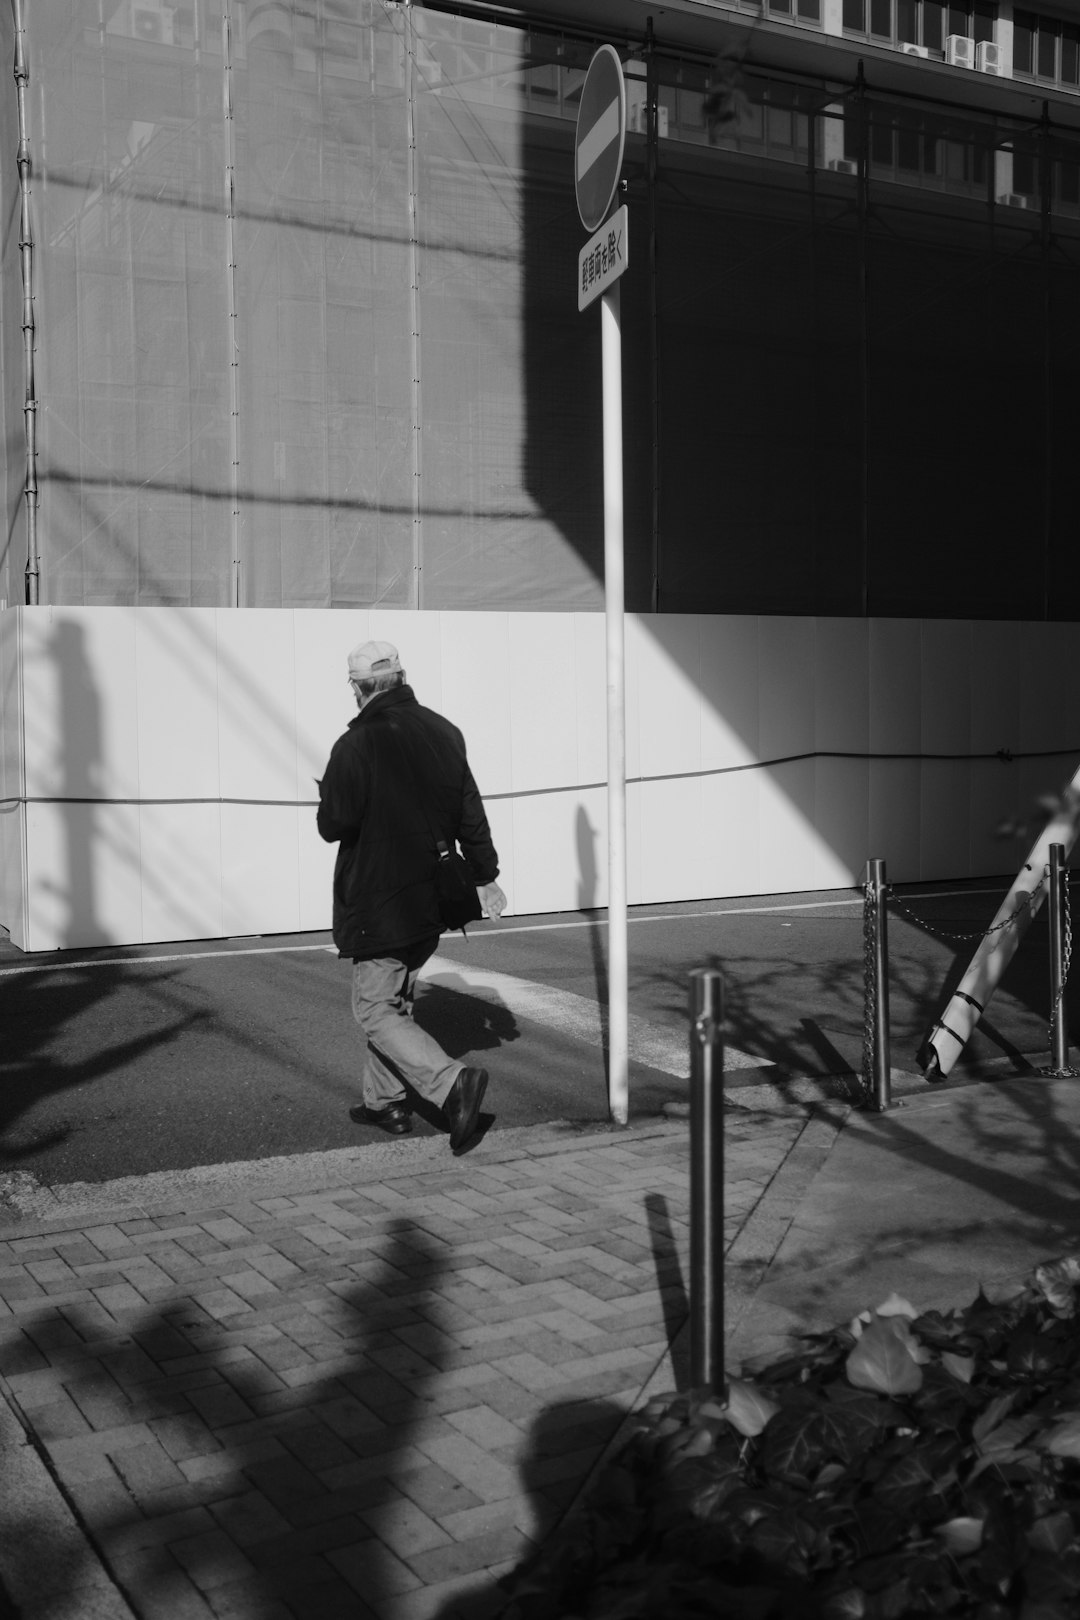 man in black jacket walking on sidewalk